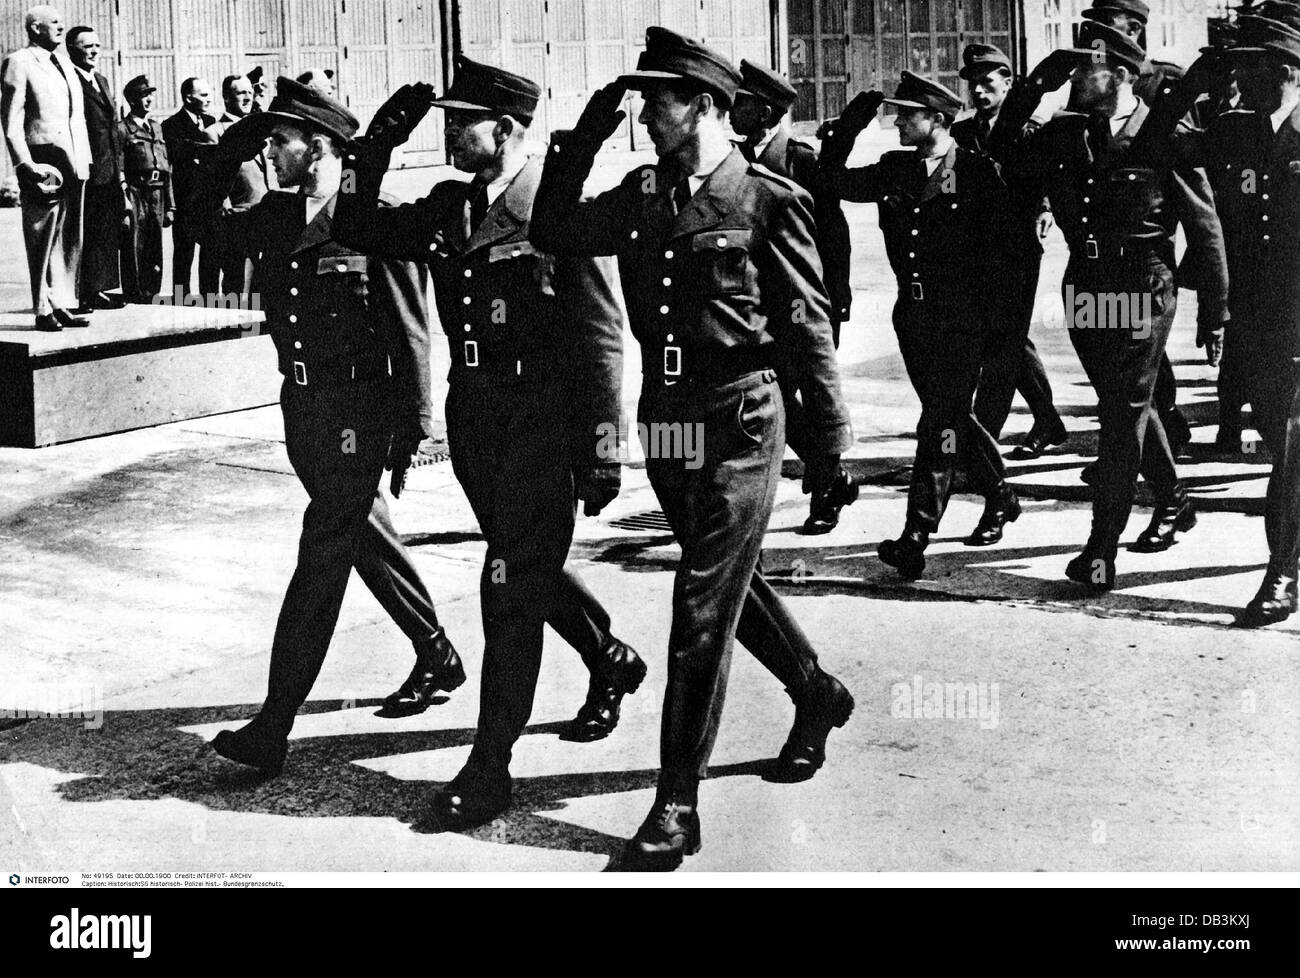 Police, police des frontières allemande (Bundesgrenzschutz), nouveaux membres lors d'un défilé, Ministre fédéral Robert Lehr prenant le salut, 13.6.1951, droits additionnels-Clearences-non disponible Banque D'Images